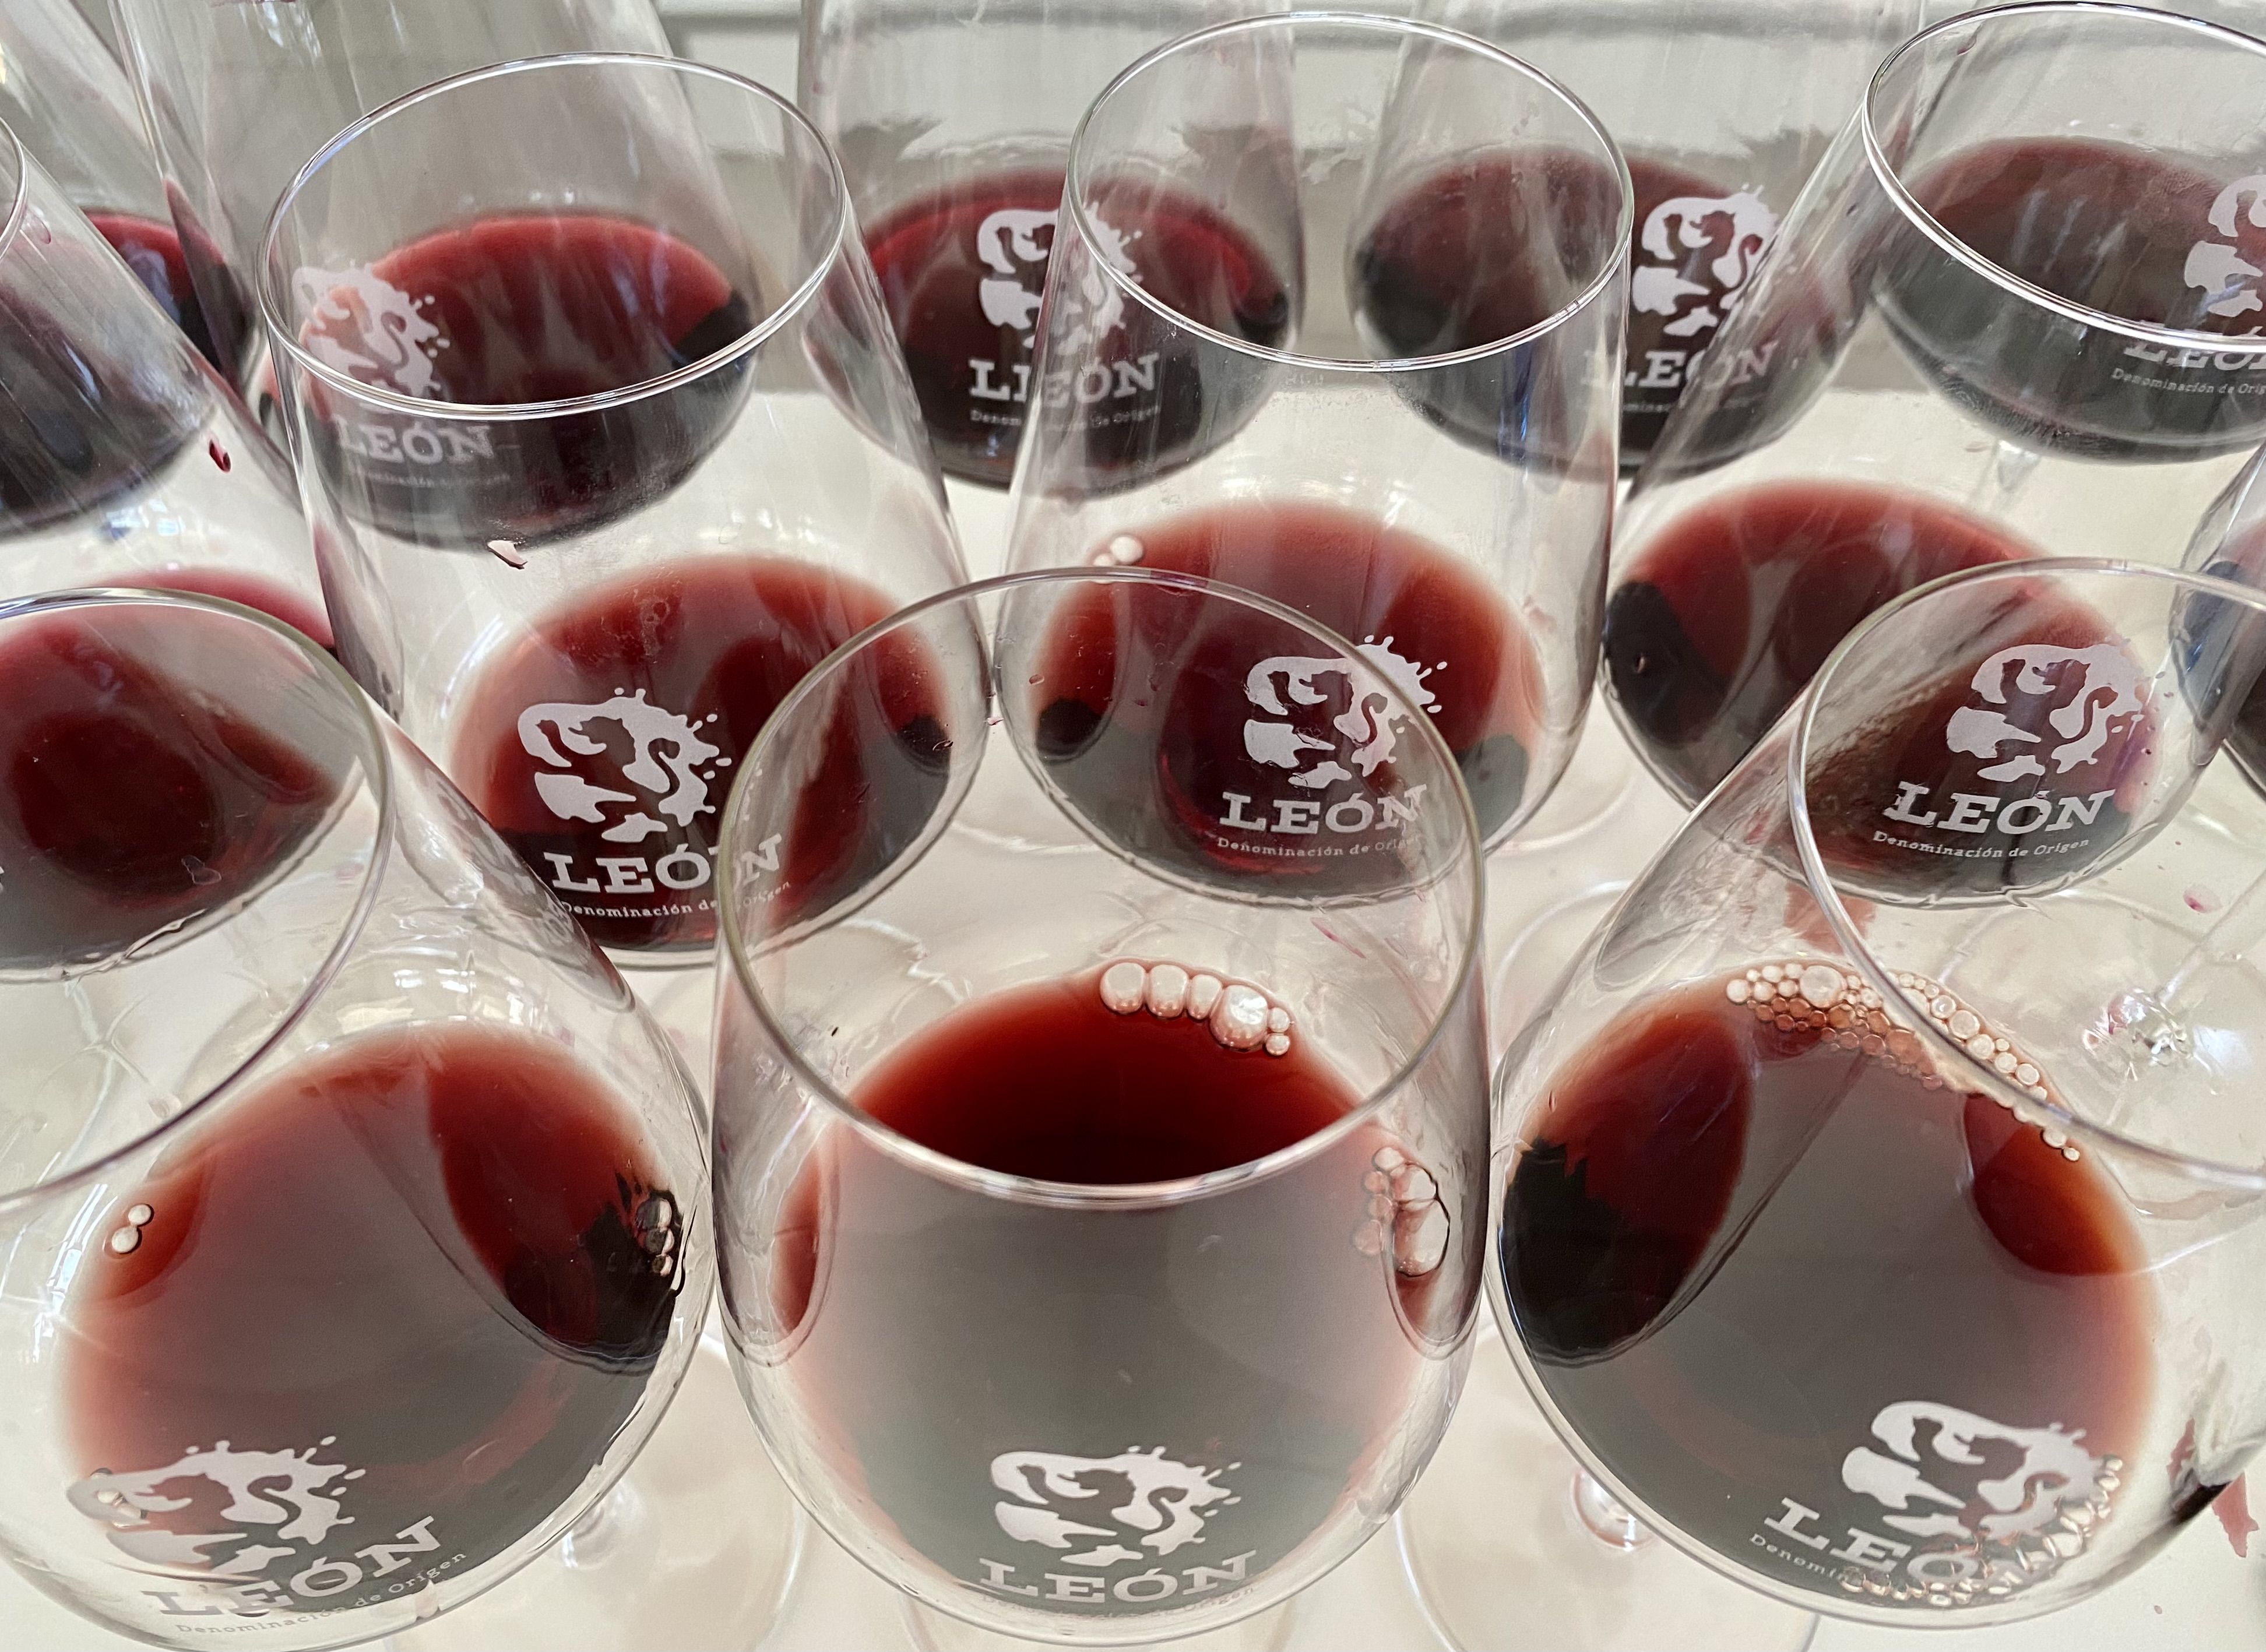 Copas de vino tinto genérico de la Denominación de Origen León. | L.N.C.